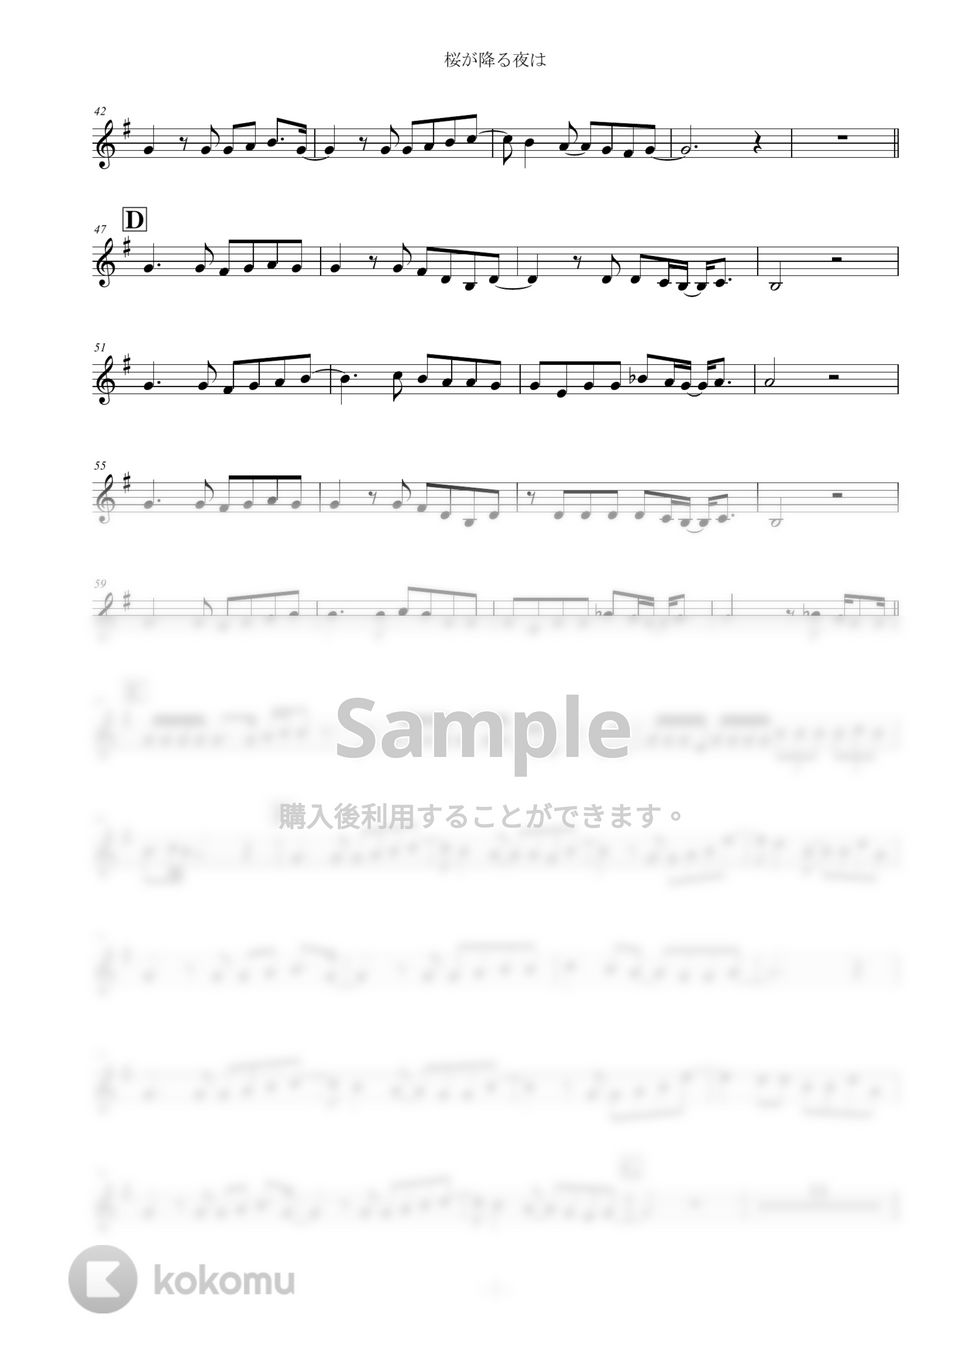 あいみょん - 桜が降る夜は (トランペット) by keisukeYamanaka(Musicpro)